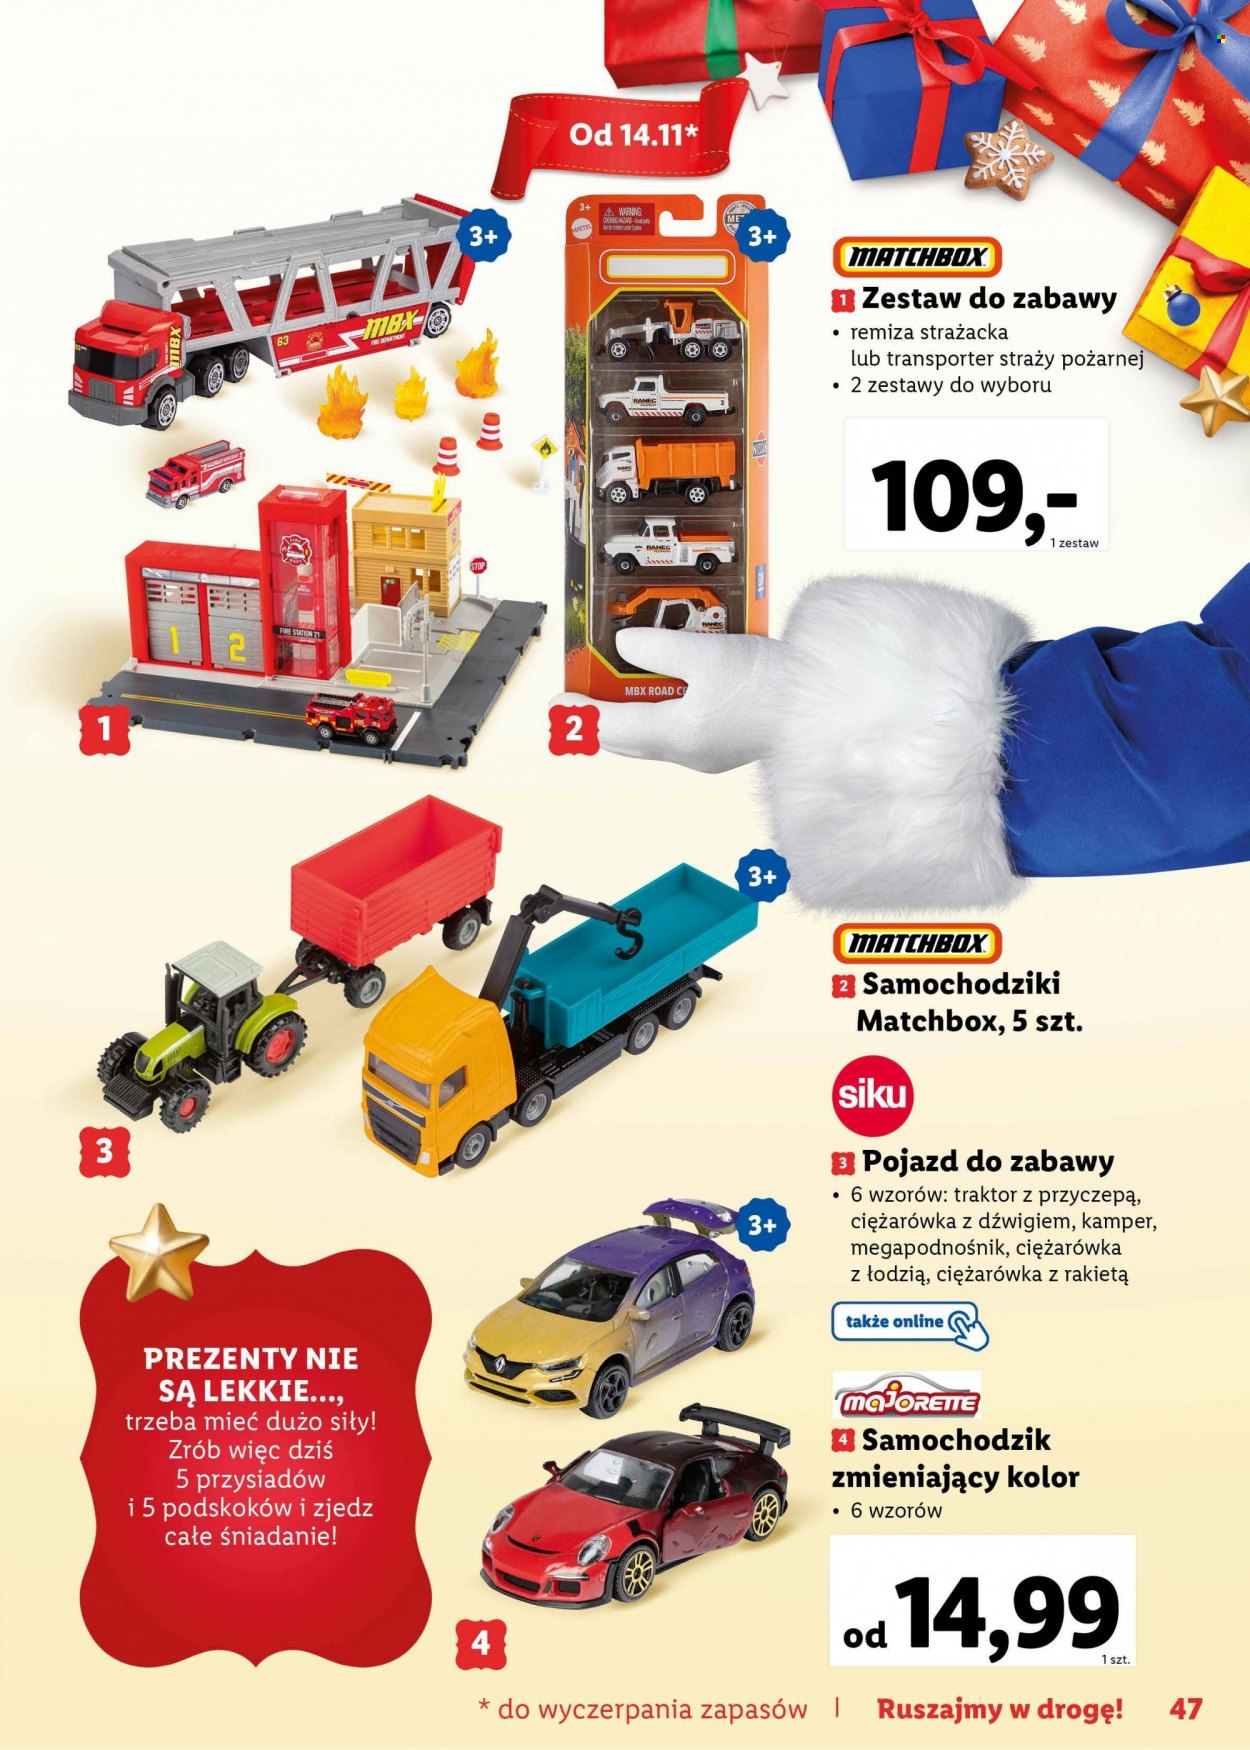 Gazetka Lidl - Produkty w akcji - torba transportowa, rakieta, samochód, straż pożarna, samochodziki, cieżarówka, traktor, Mattel. Strona 47.